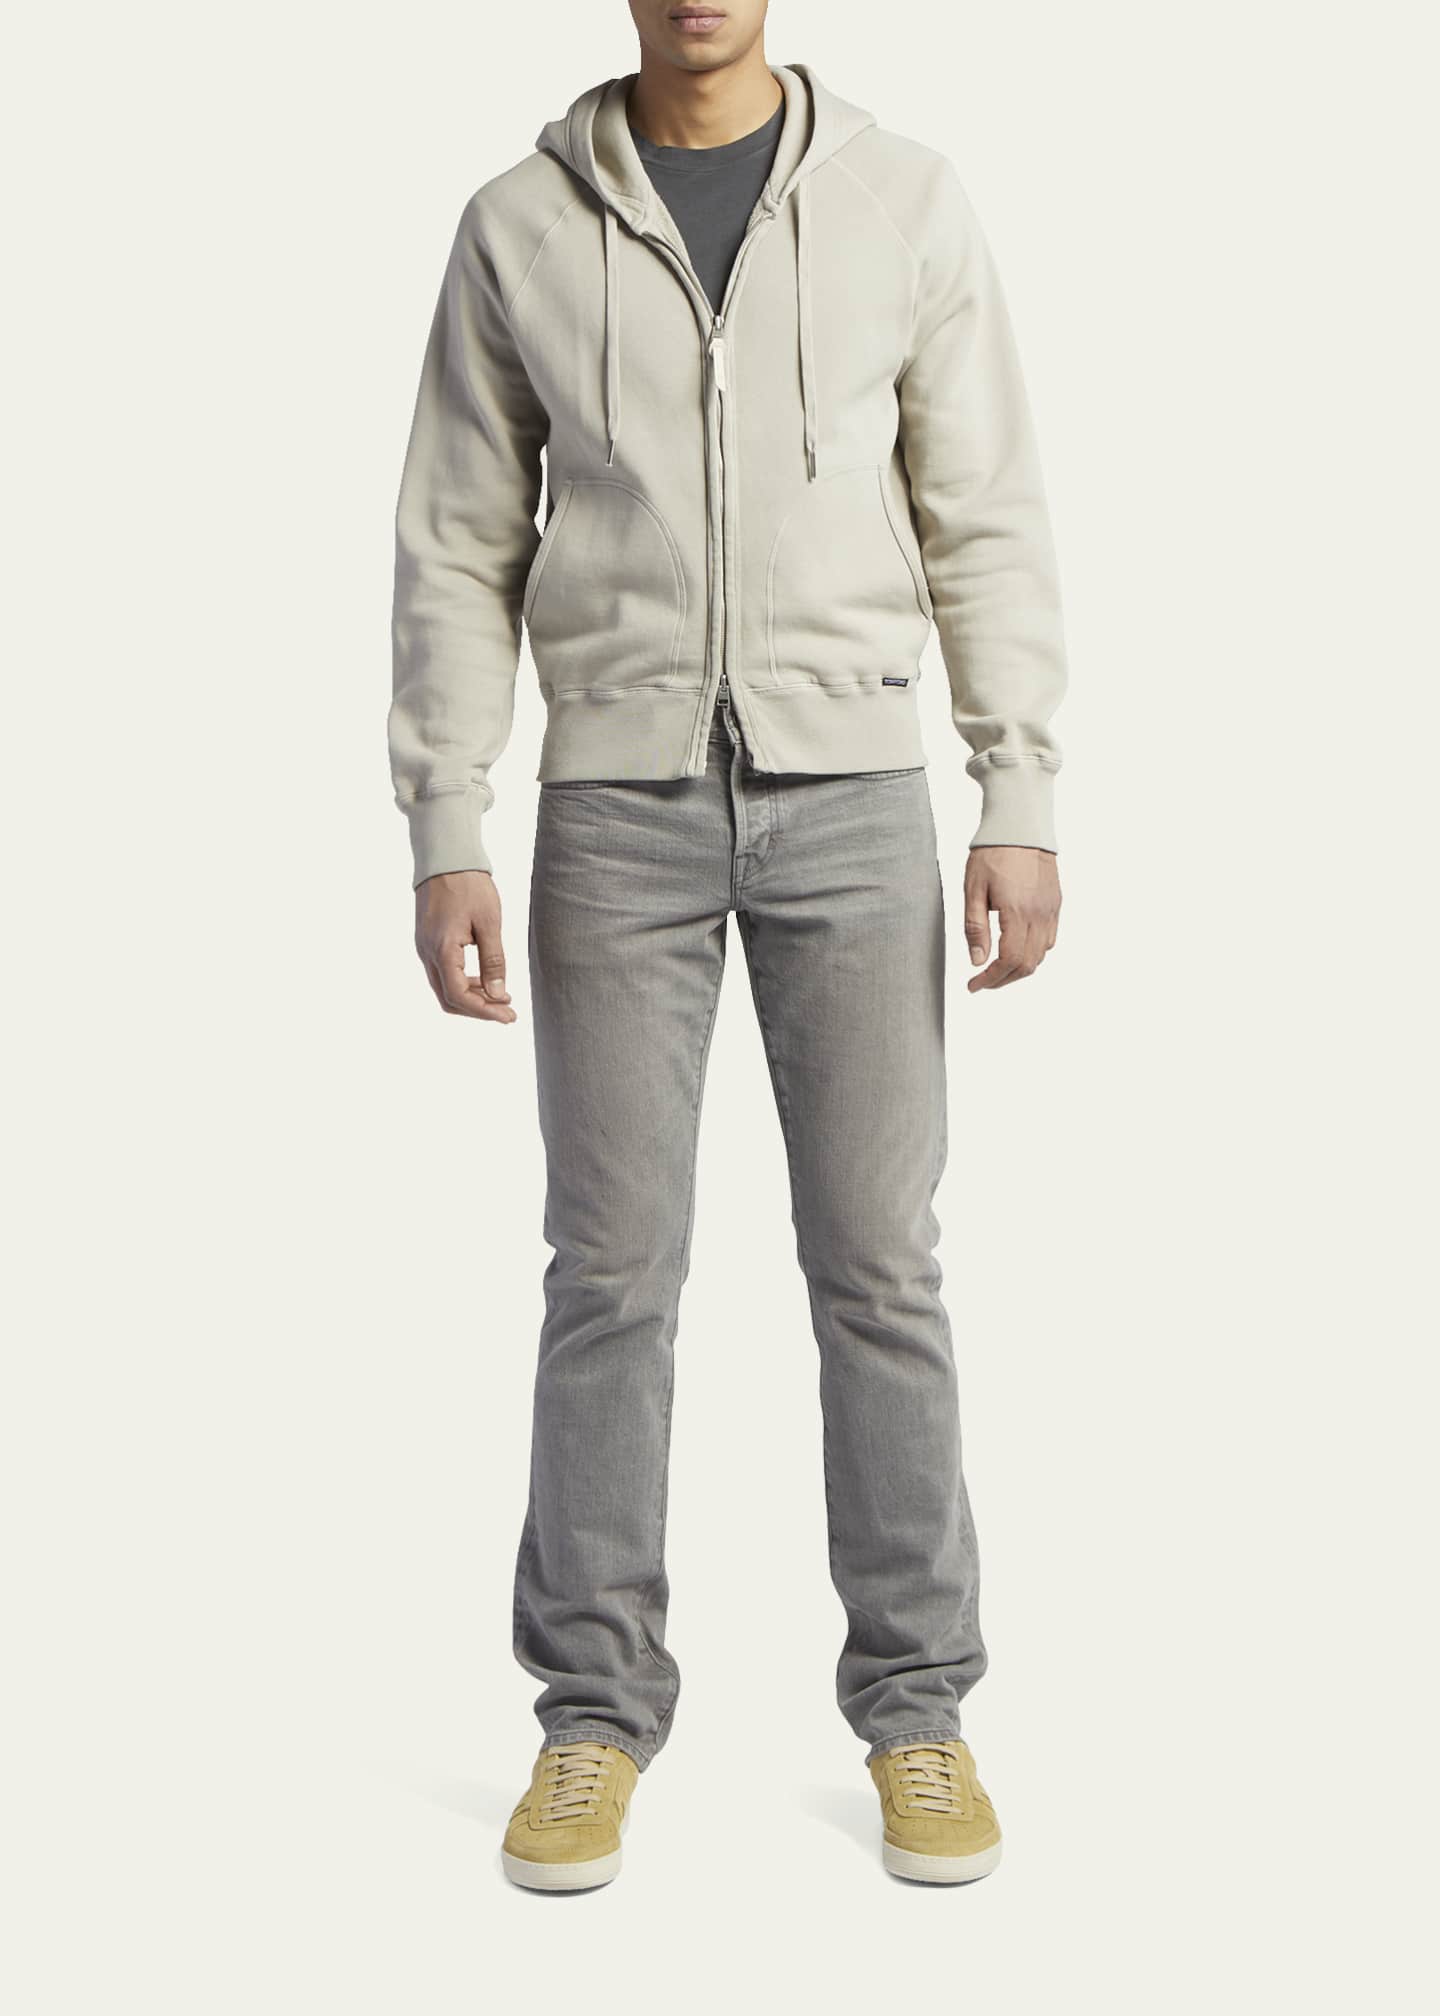 TOM FORD Men's Garment Dyed Full-Zip Hooded Sweater - Bergdorf Goodman